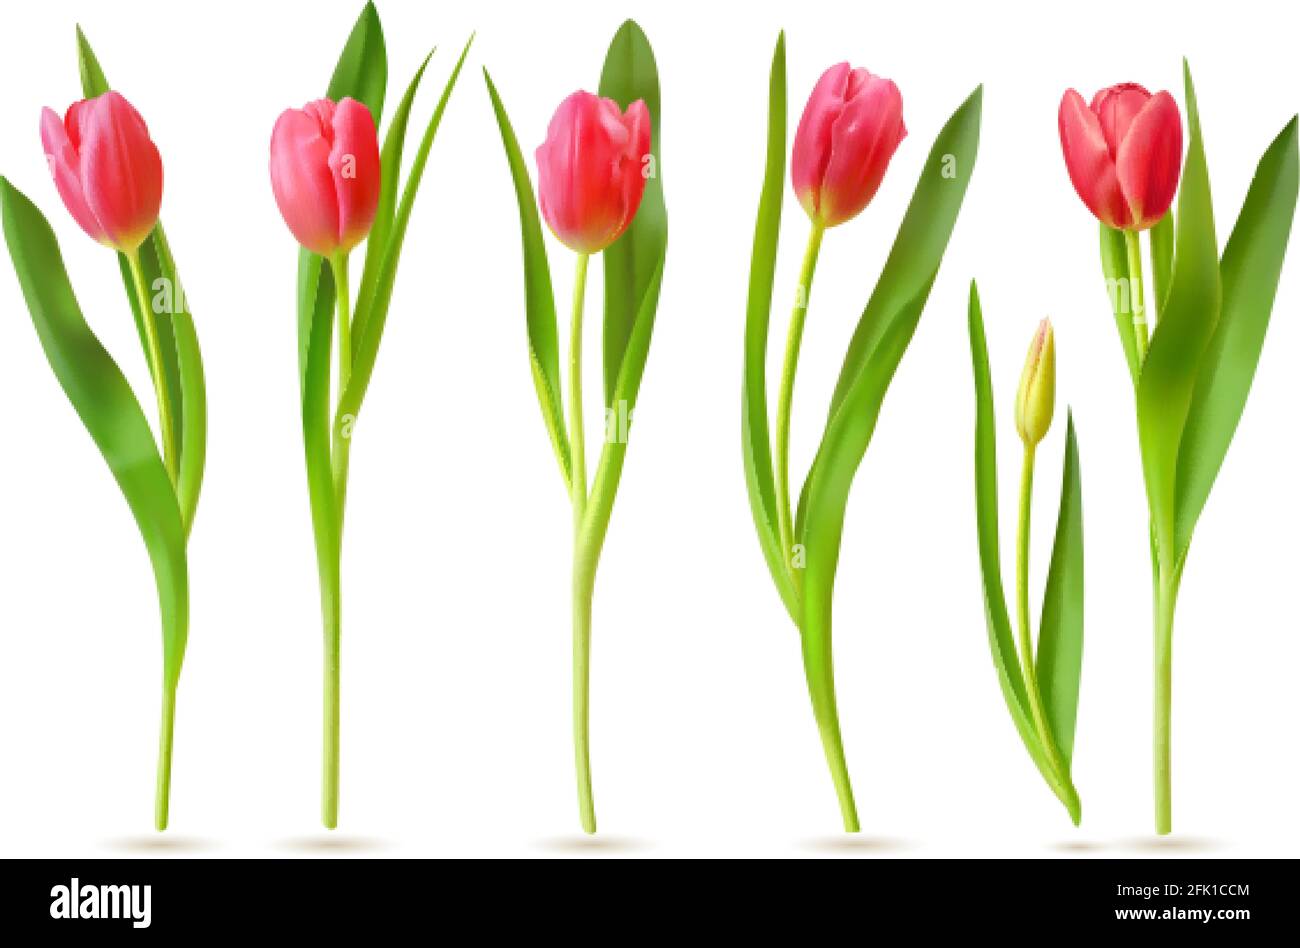 Realistische Tulpe. Rosa rote Knospen Tulpen, Frühlingsblumen Bouquet, bunte florale Elemente für Grußkarte, Broschüre, Banner Vektor 3d-Set Stock Vektor